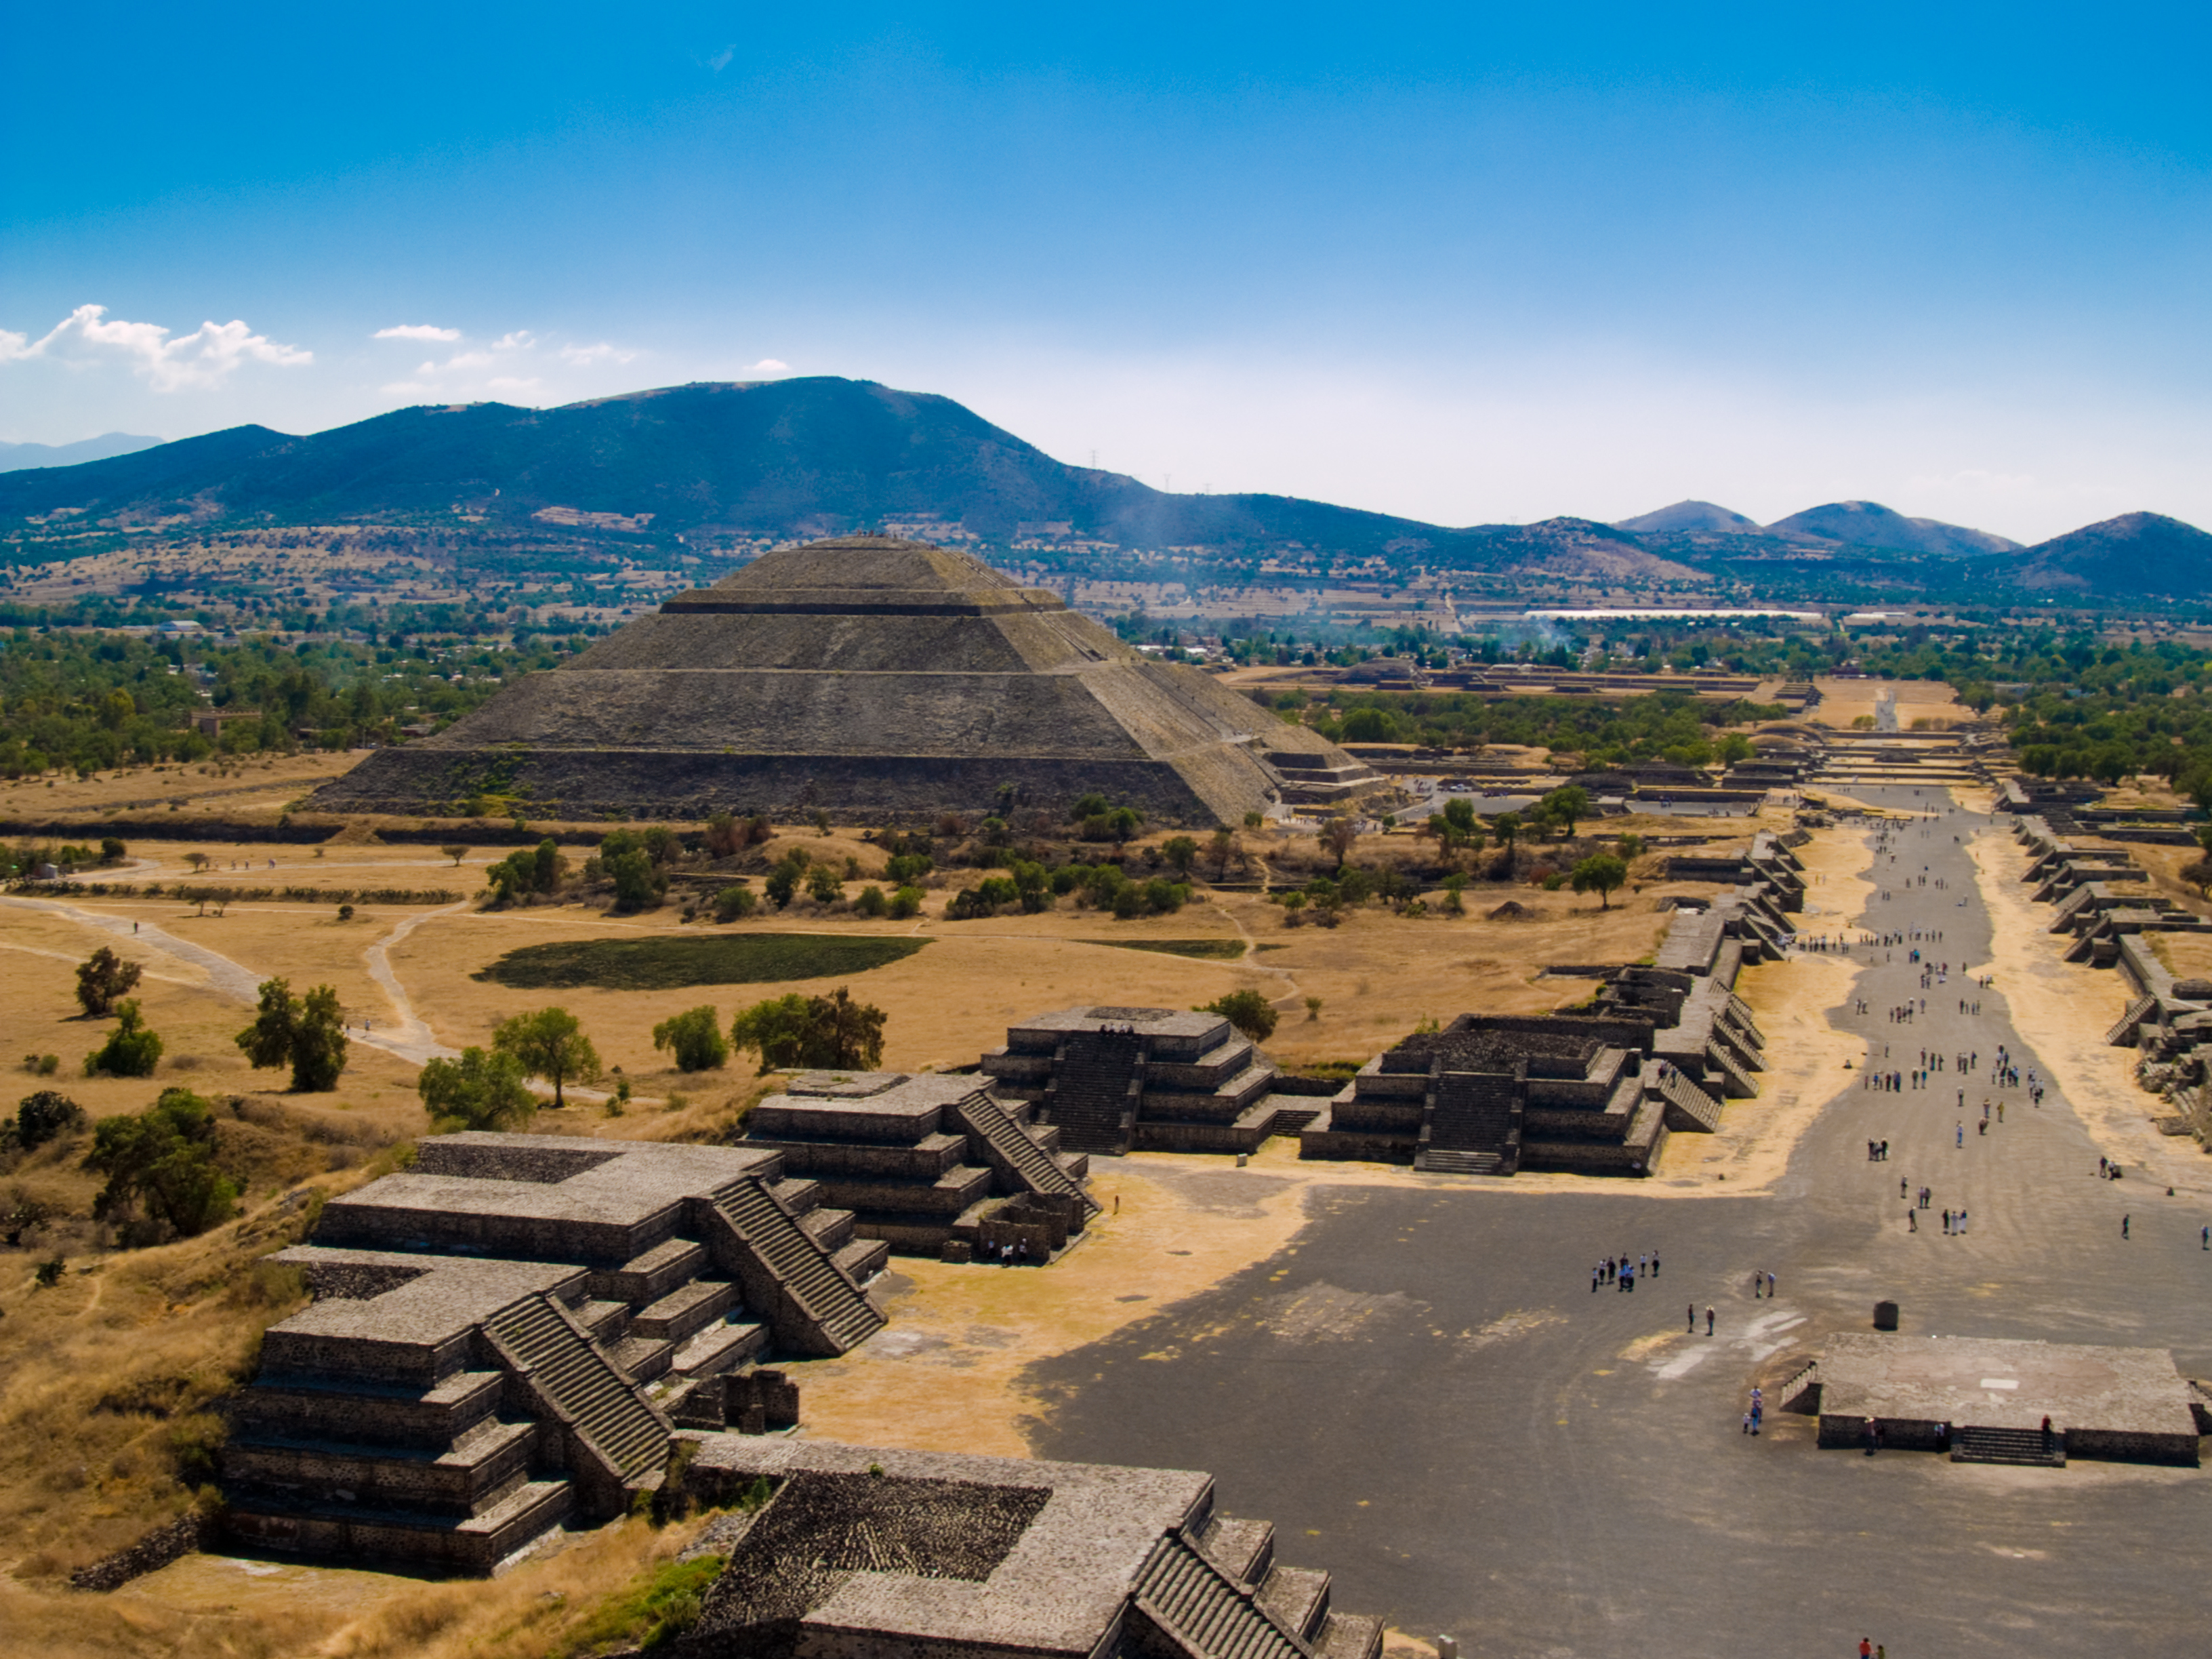 Теотиуакан е археологически обект в Мексико, който е разположен на 48 км североизточно от днешната столица град Мексико. В най-точен превод от науатл, името на града се произнася с ударение върху уа (Теотиуа́кан) и ще рече „Където боговете са сътворени“ или „Място на боговете“. В предколониално Мексико той е представлявал многолюден град, културно-икономически и култово-религиозен център. Основан е около I век пр.н.е. от неизвестни индиански племена. По неизвестни причини градът е напуснат и става необитаем през IX век. 3 века по-късно е „преоткрит“ от ацтеките, които използват храмовия комплекс за култови ритуали.